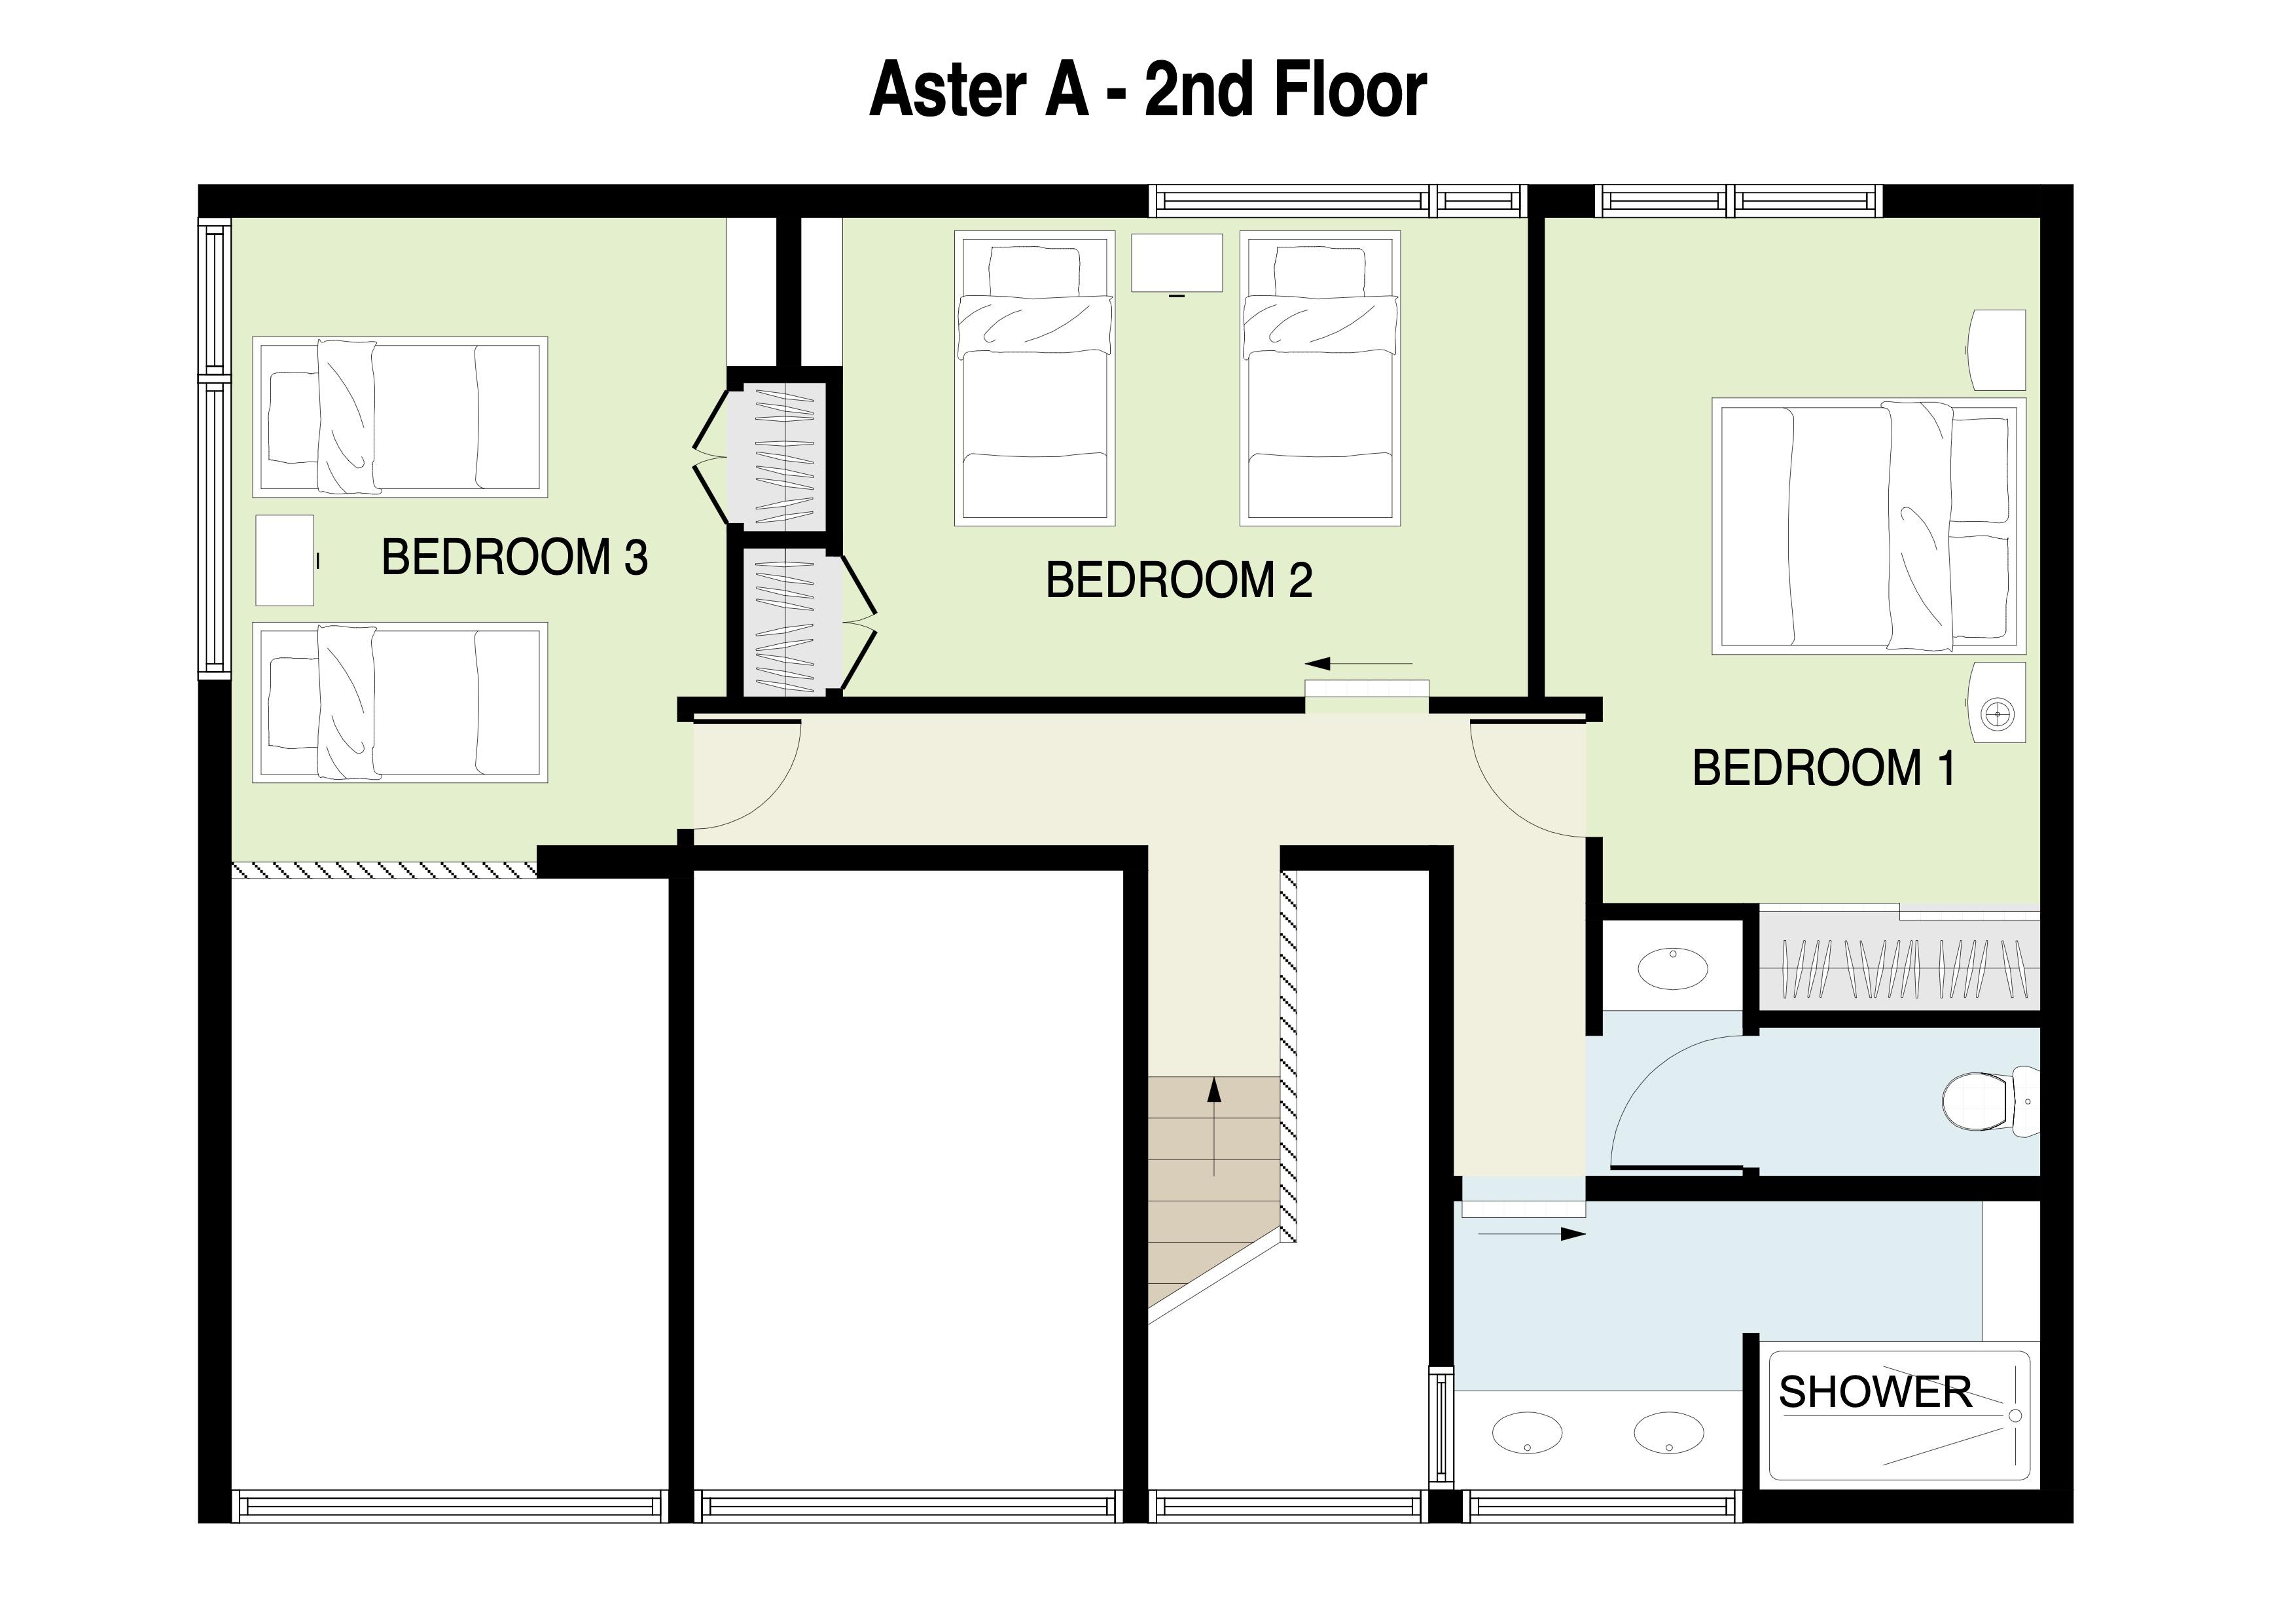 Aster A 2nd Floor plan